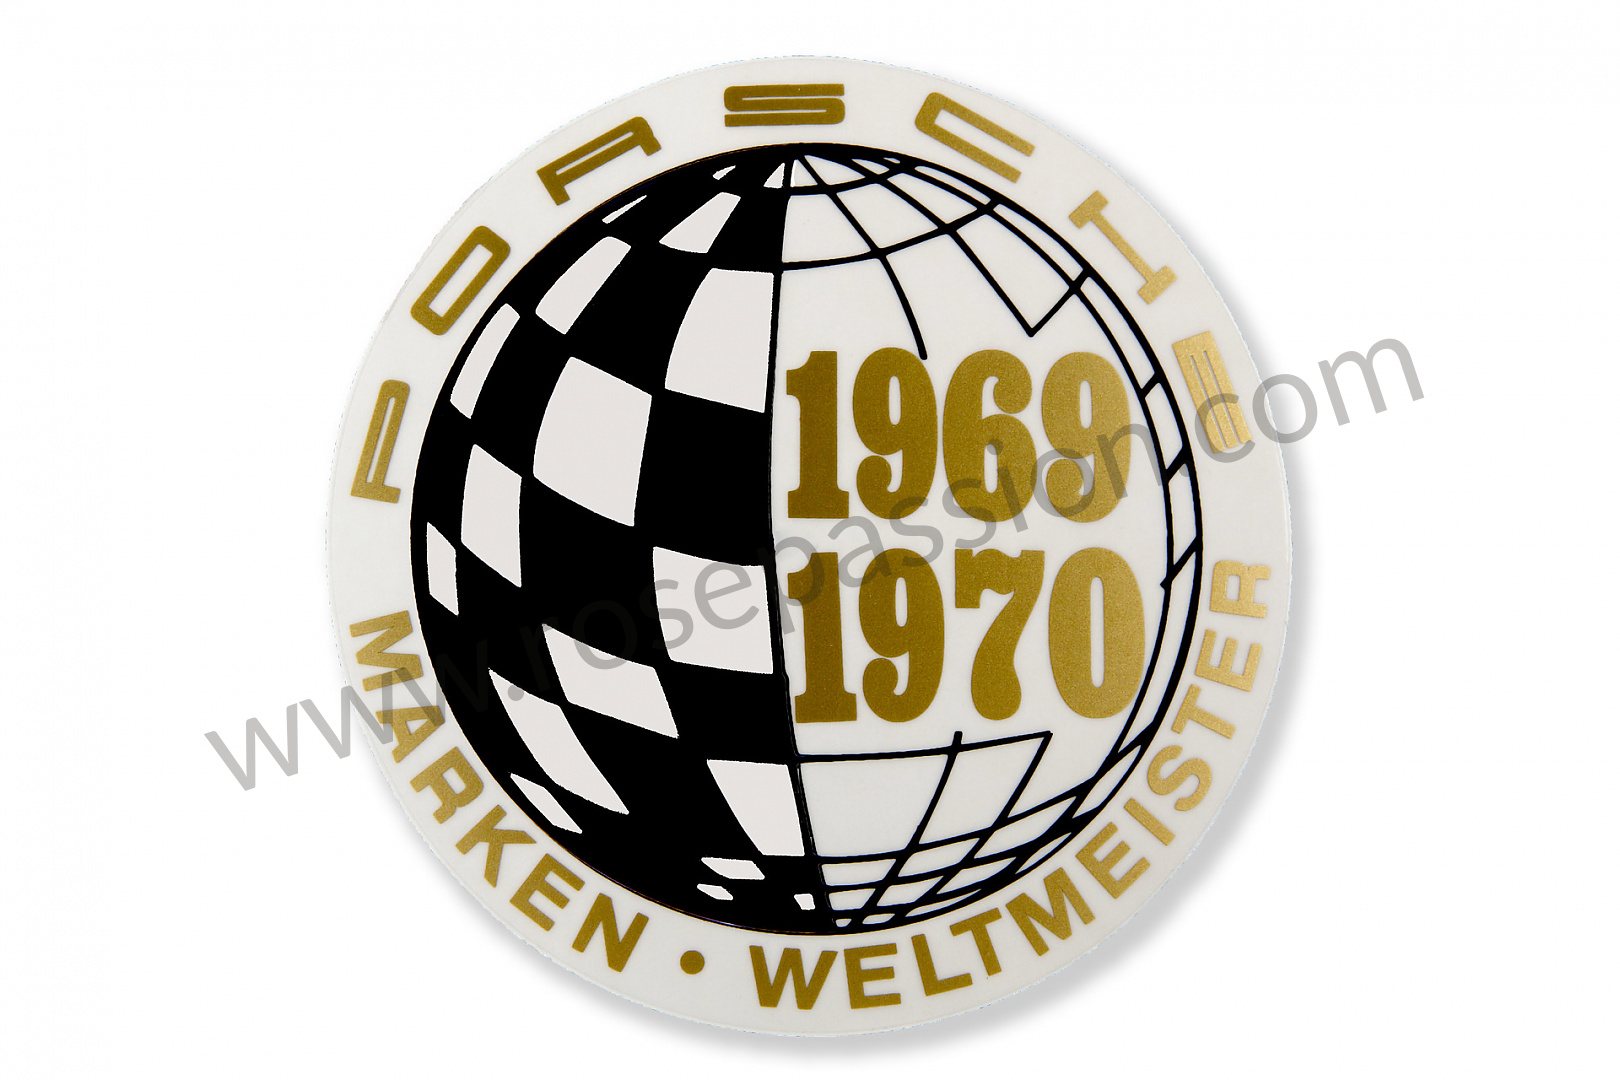 P233244 - 91170110301 - Aufkleber marken weltmeister 69-70 für Porsche 904  / 1964 / Motor carrera 587 / 3